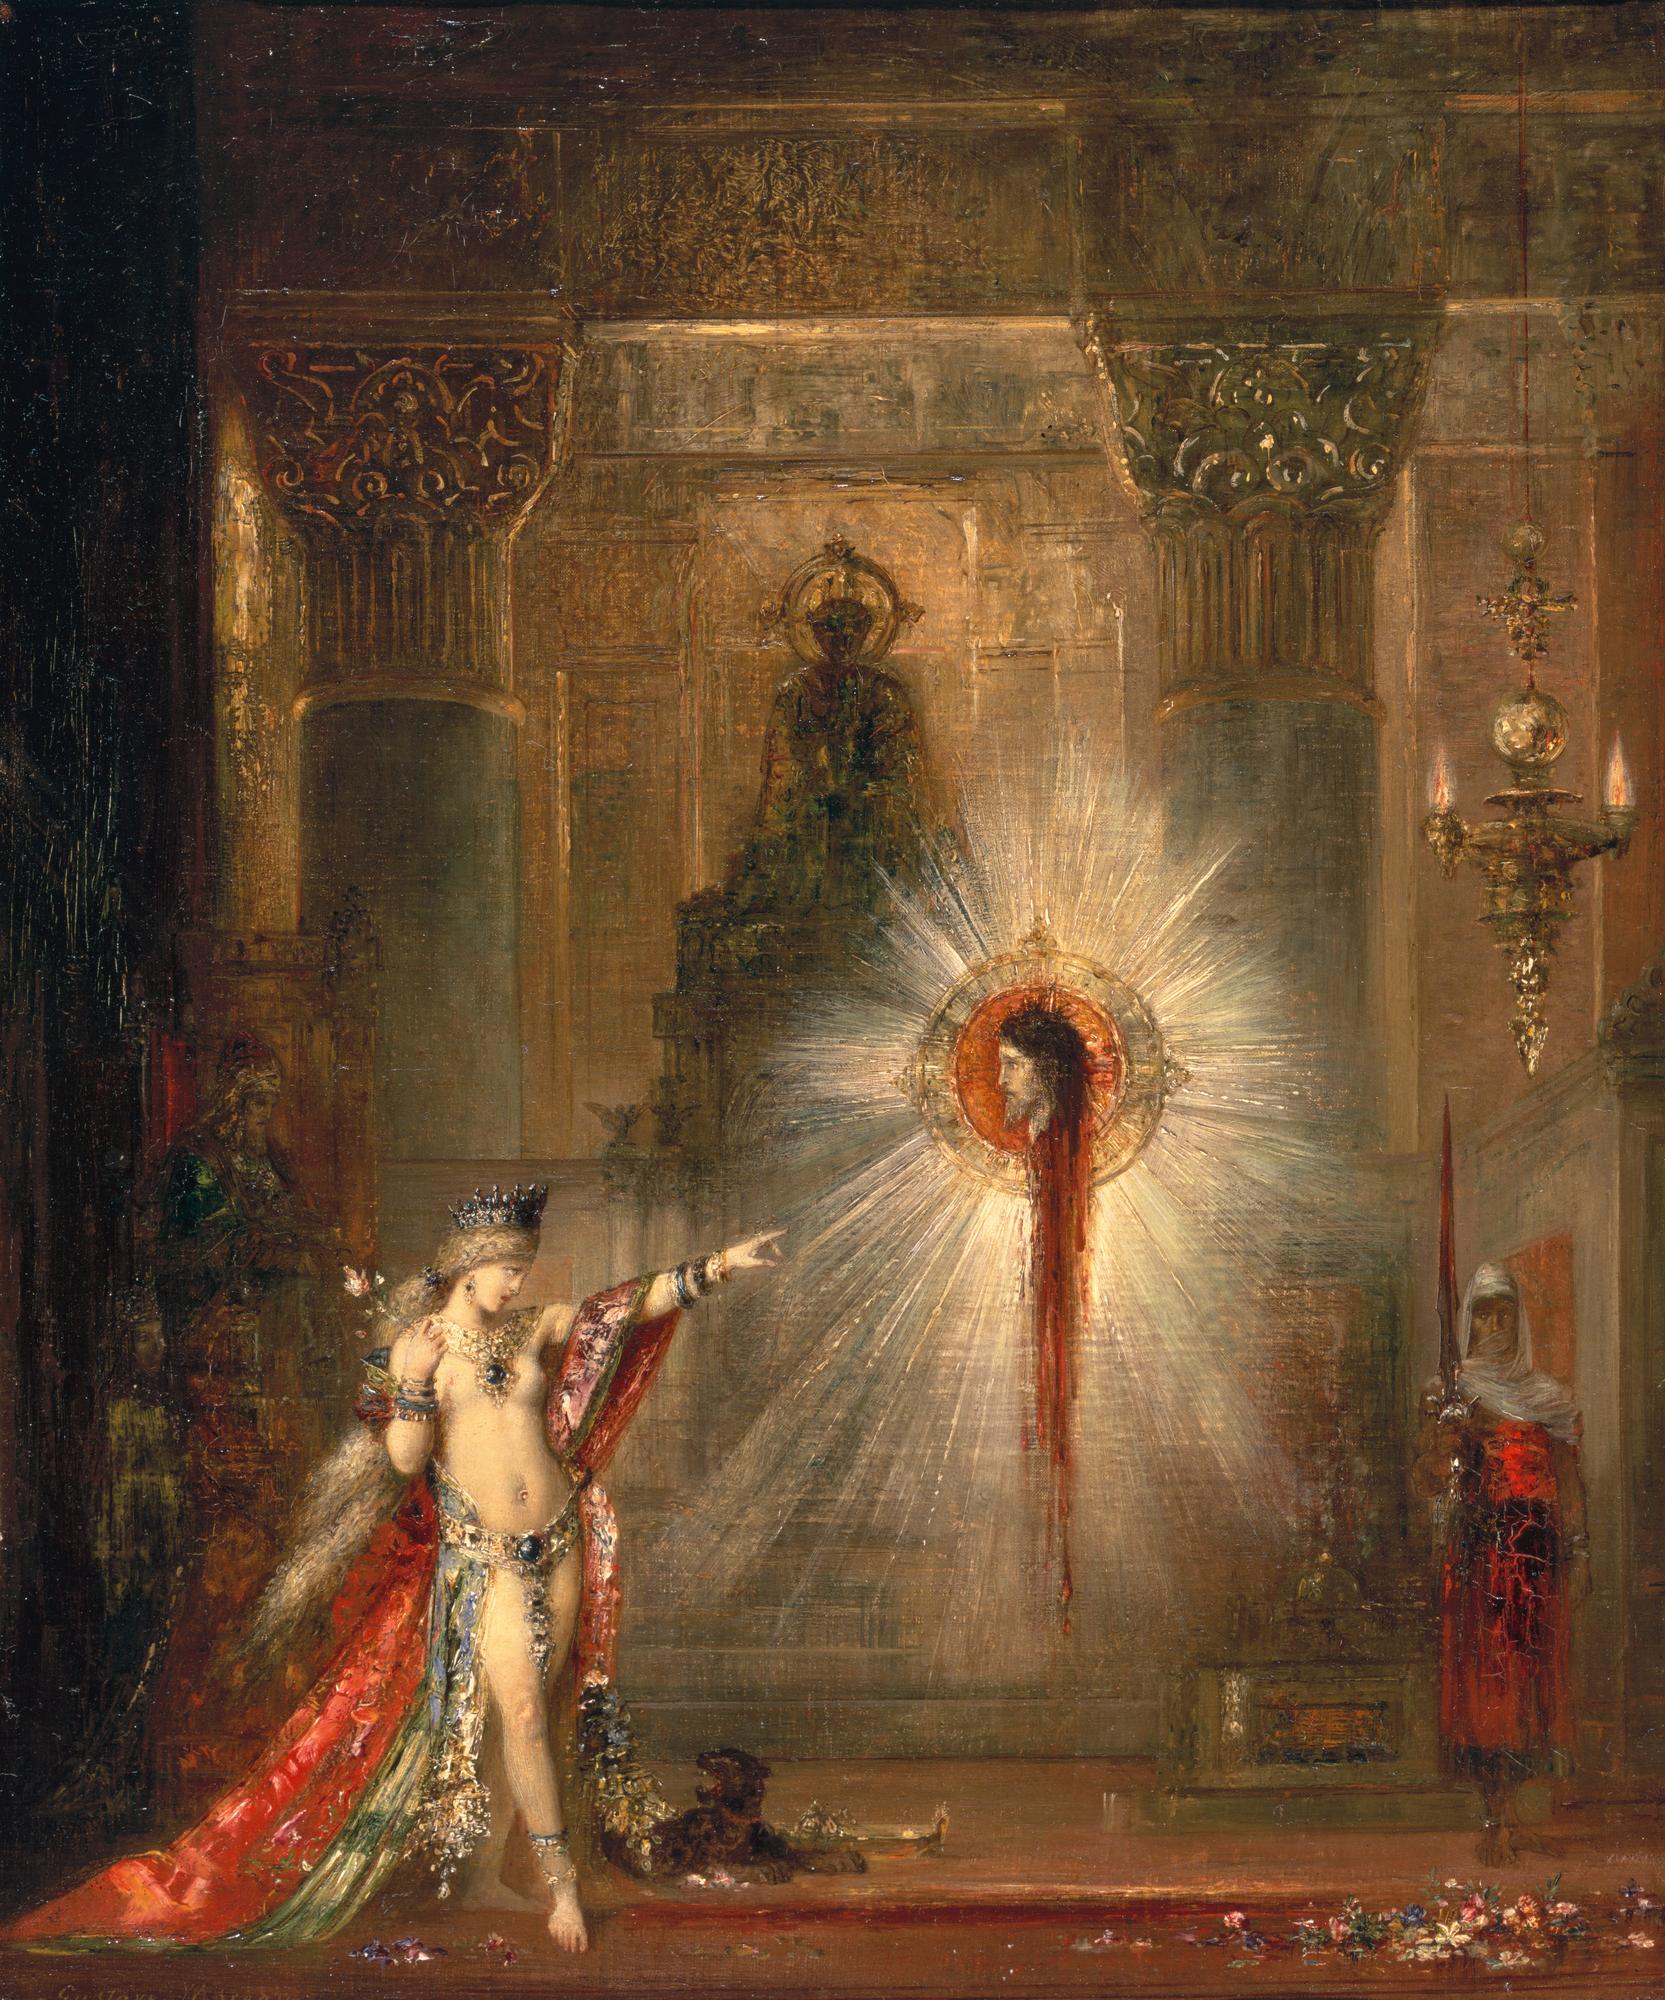 Moreau, Gustave. 1876. L’apparition, aquarelle, 106 x 72,2 cm, Paris, RMN-Grand Palais (Musée d’Orsay) / Jean-Gilles Berizzi
